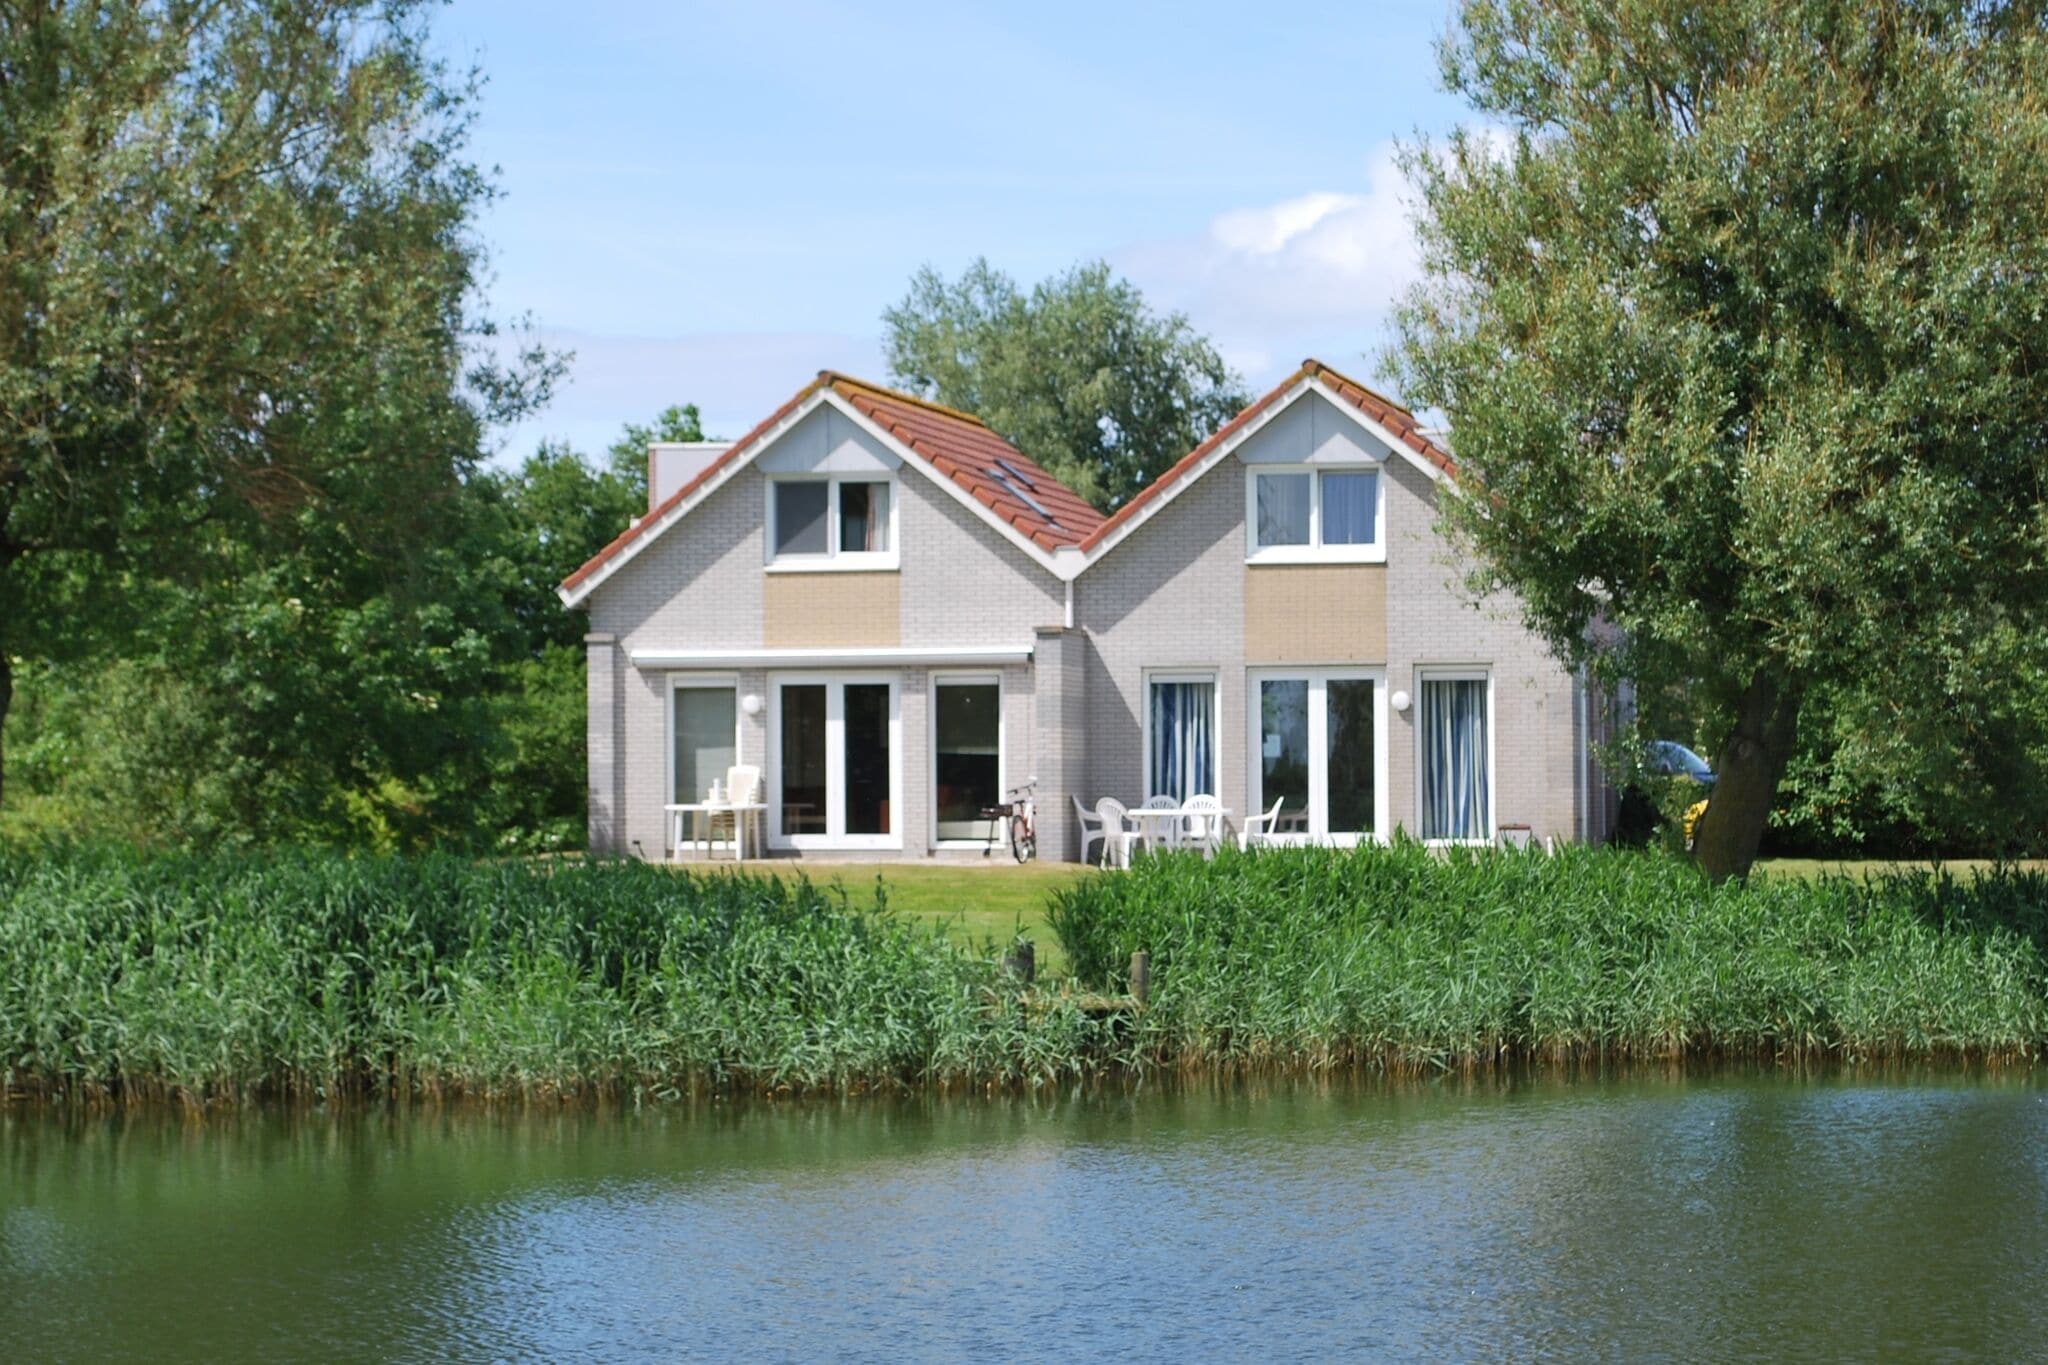 Schönes Ferienhaus am Wasser in Friesland